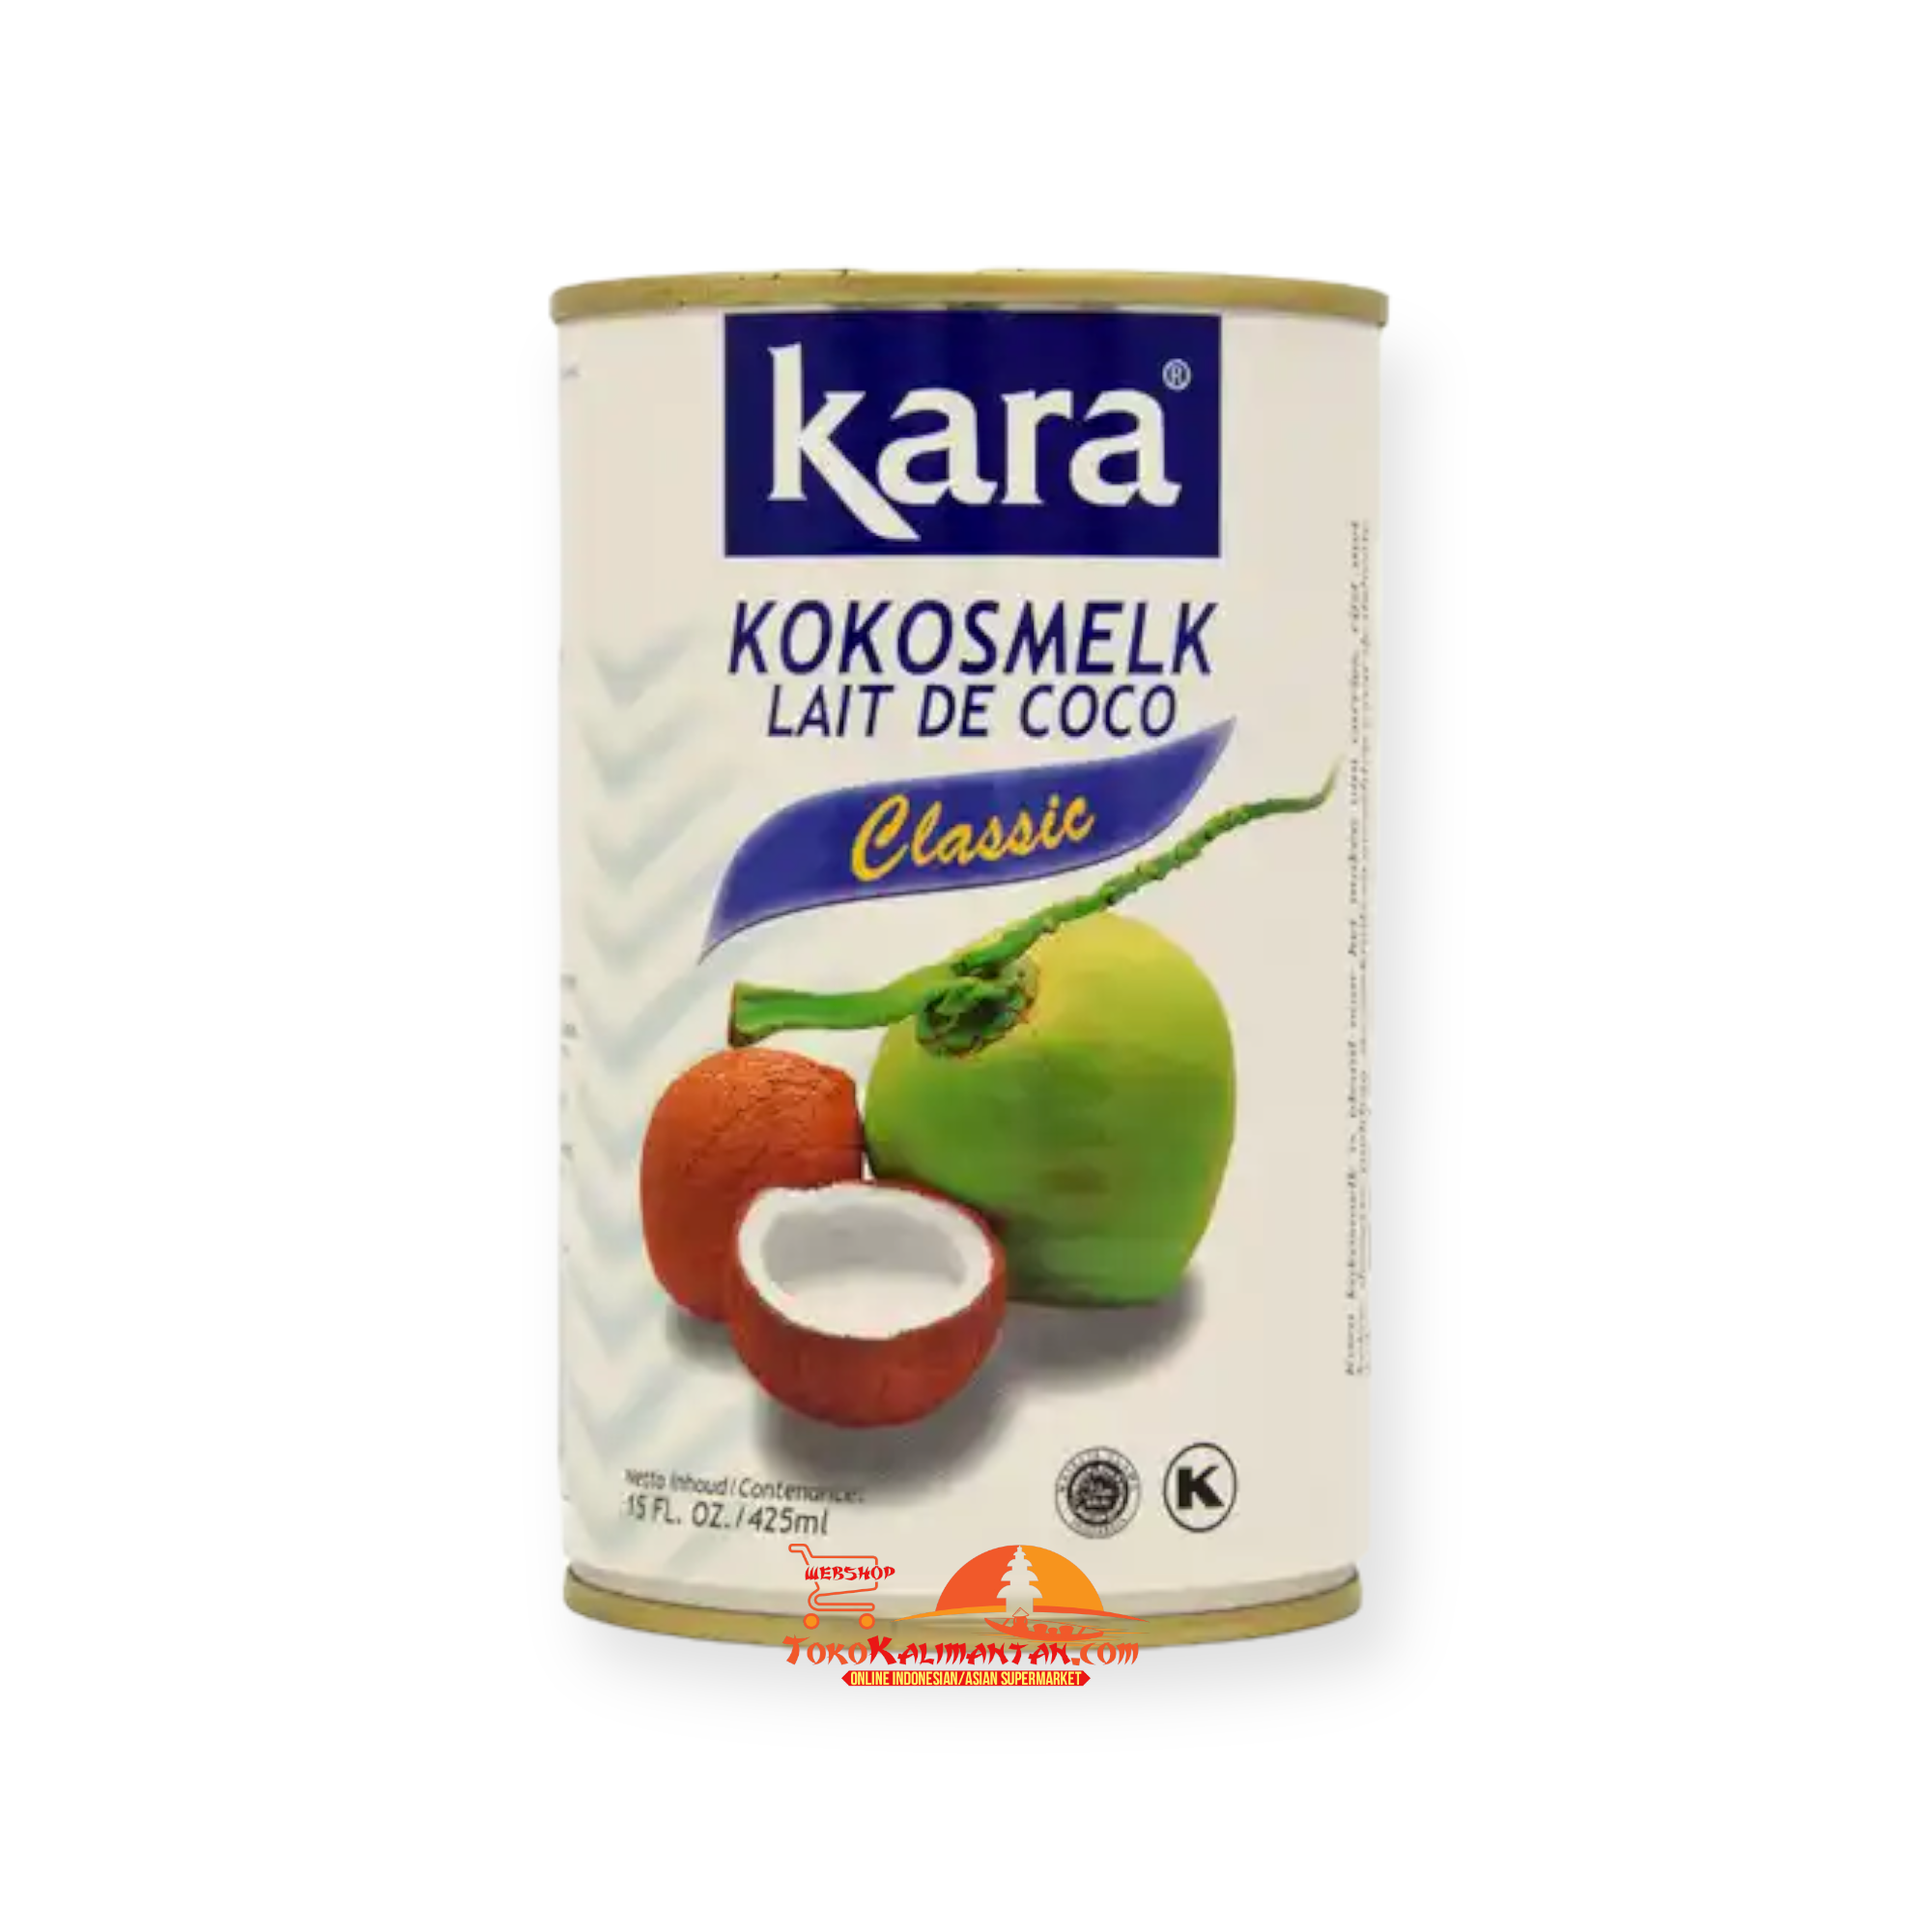 Kara Kara kaleng - classic kokosmelk lait de coco  400 ml